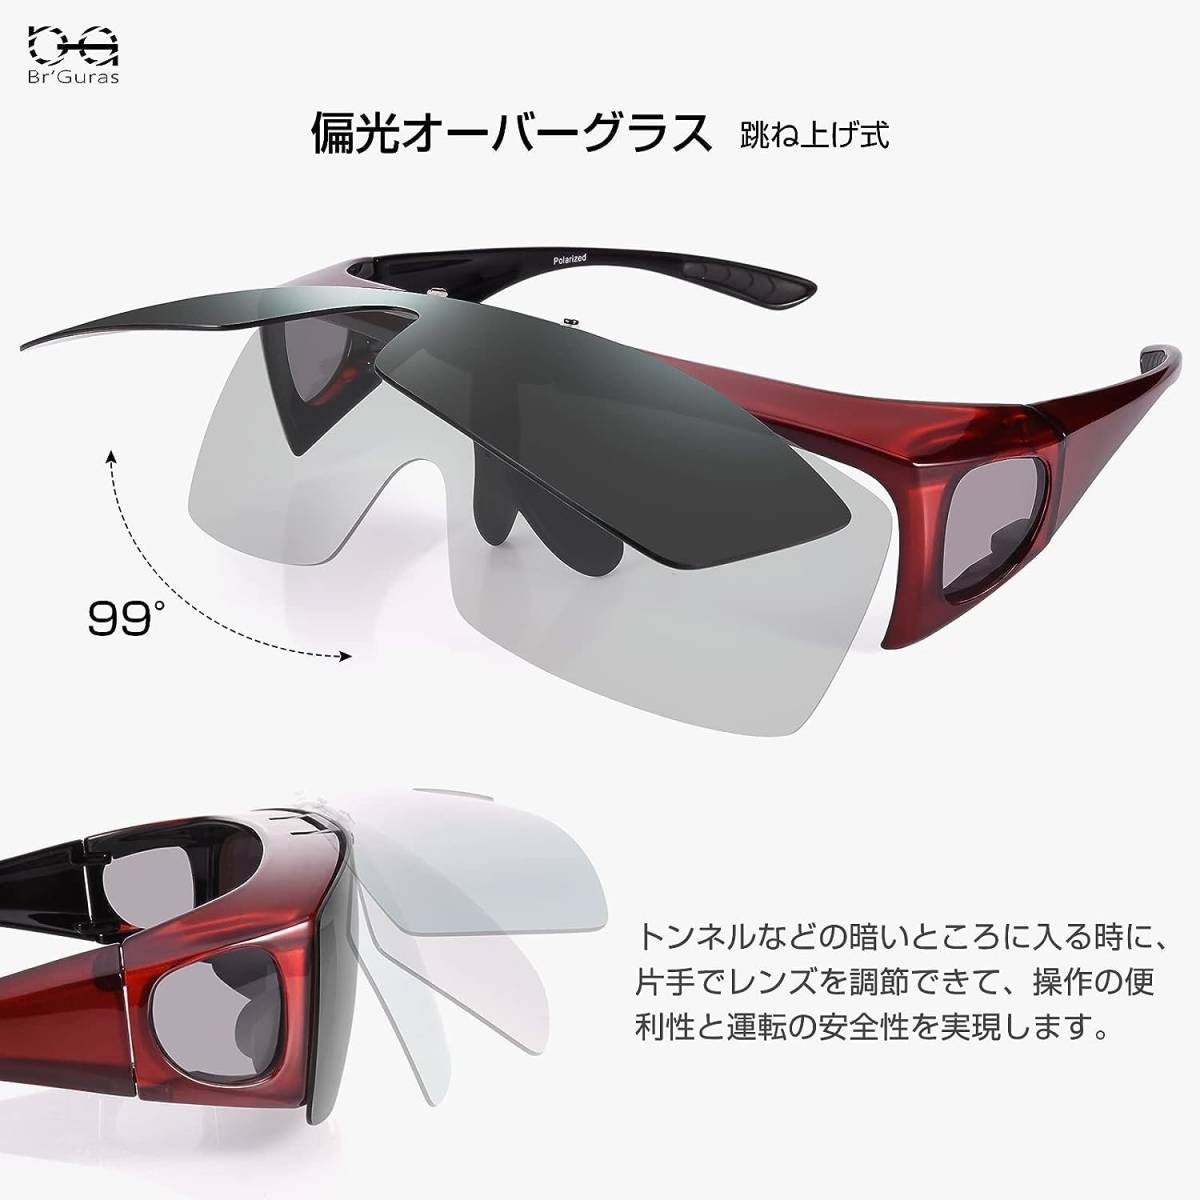 メガネの上から着用できる 跳ね上げ式 偏光サングラス オーバーサングラス UV400 紫外線カット 防塵防風性レンズ レッド